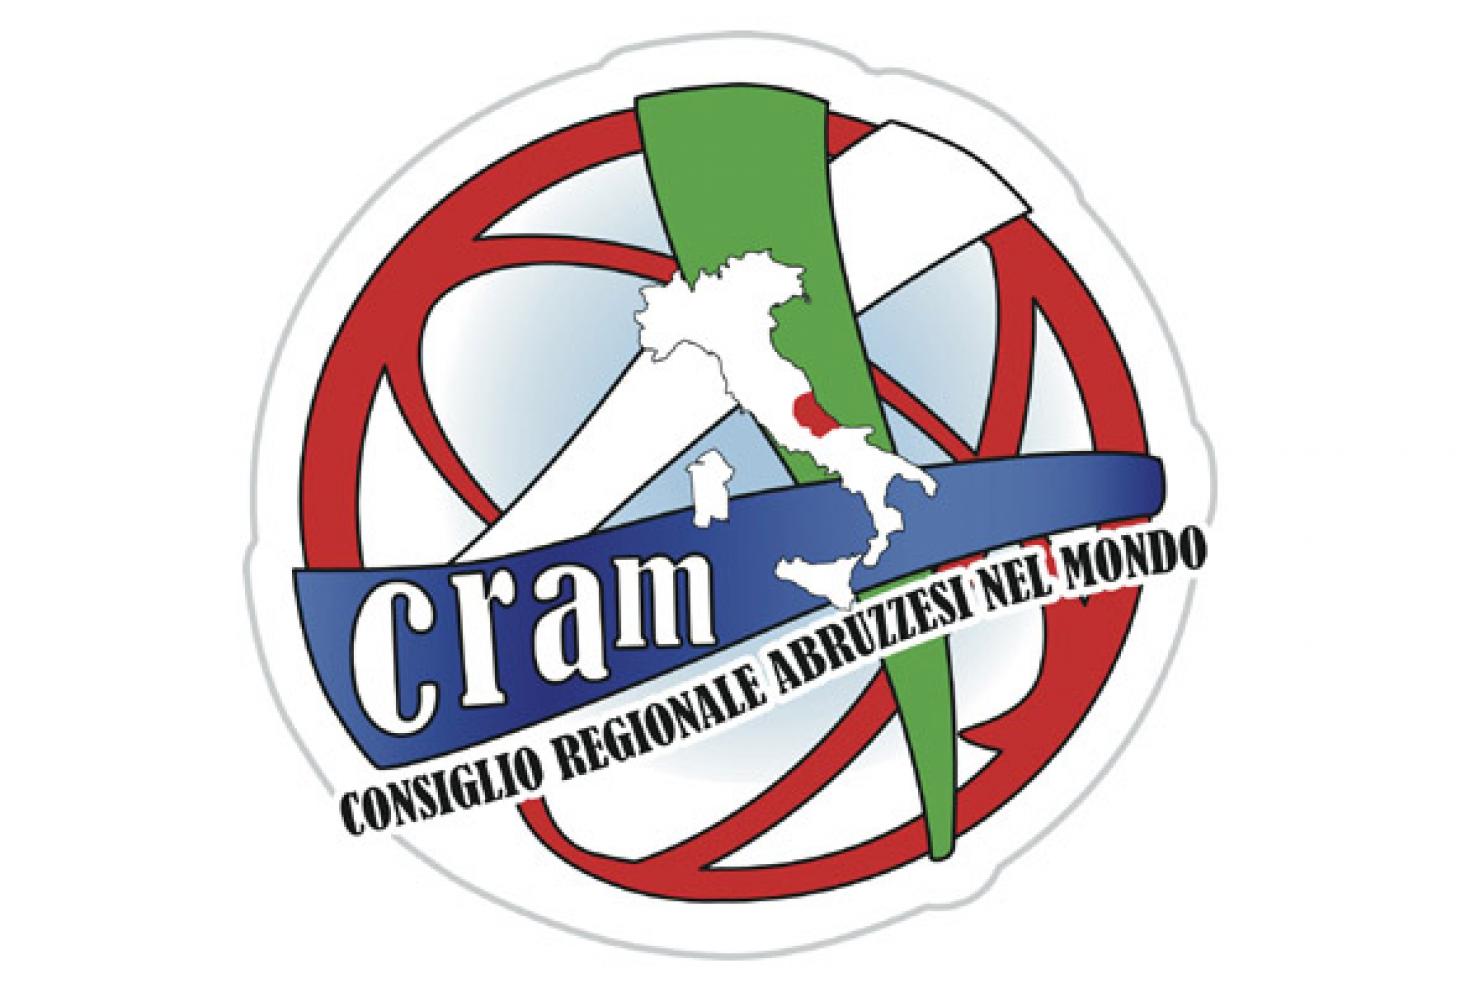 Il logo del Cram - Consiglio regionale degli abruzzesi nel mondo 